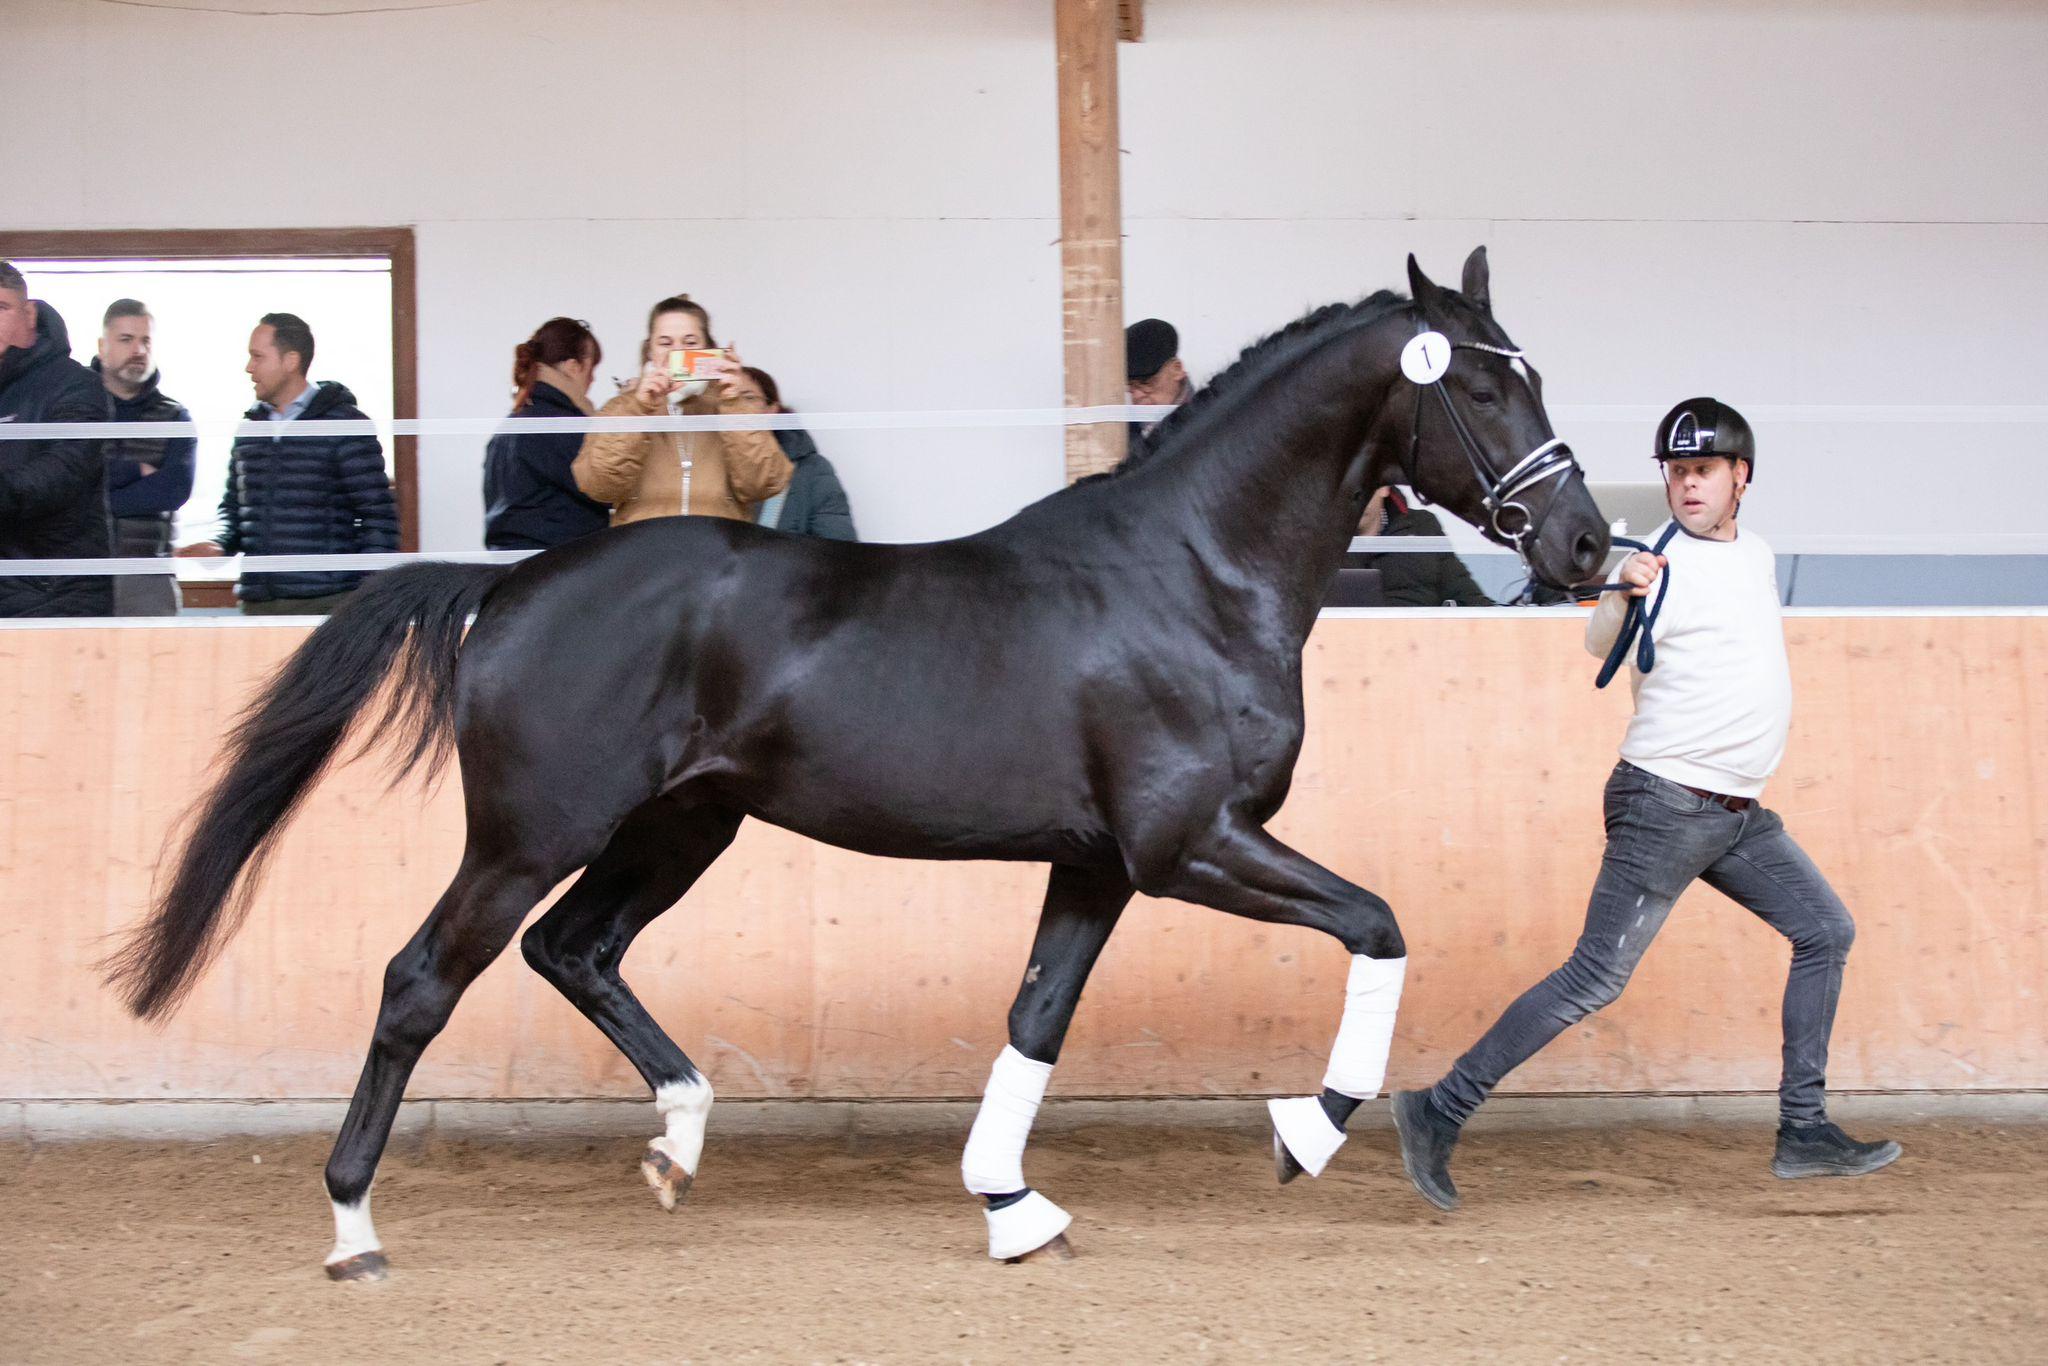 stallion-pablo-escobar-damco-kjento-ub40-6